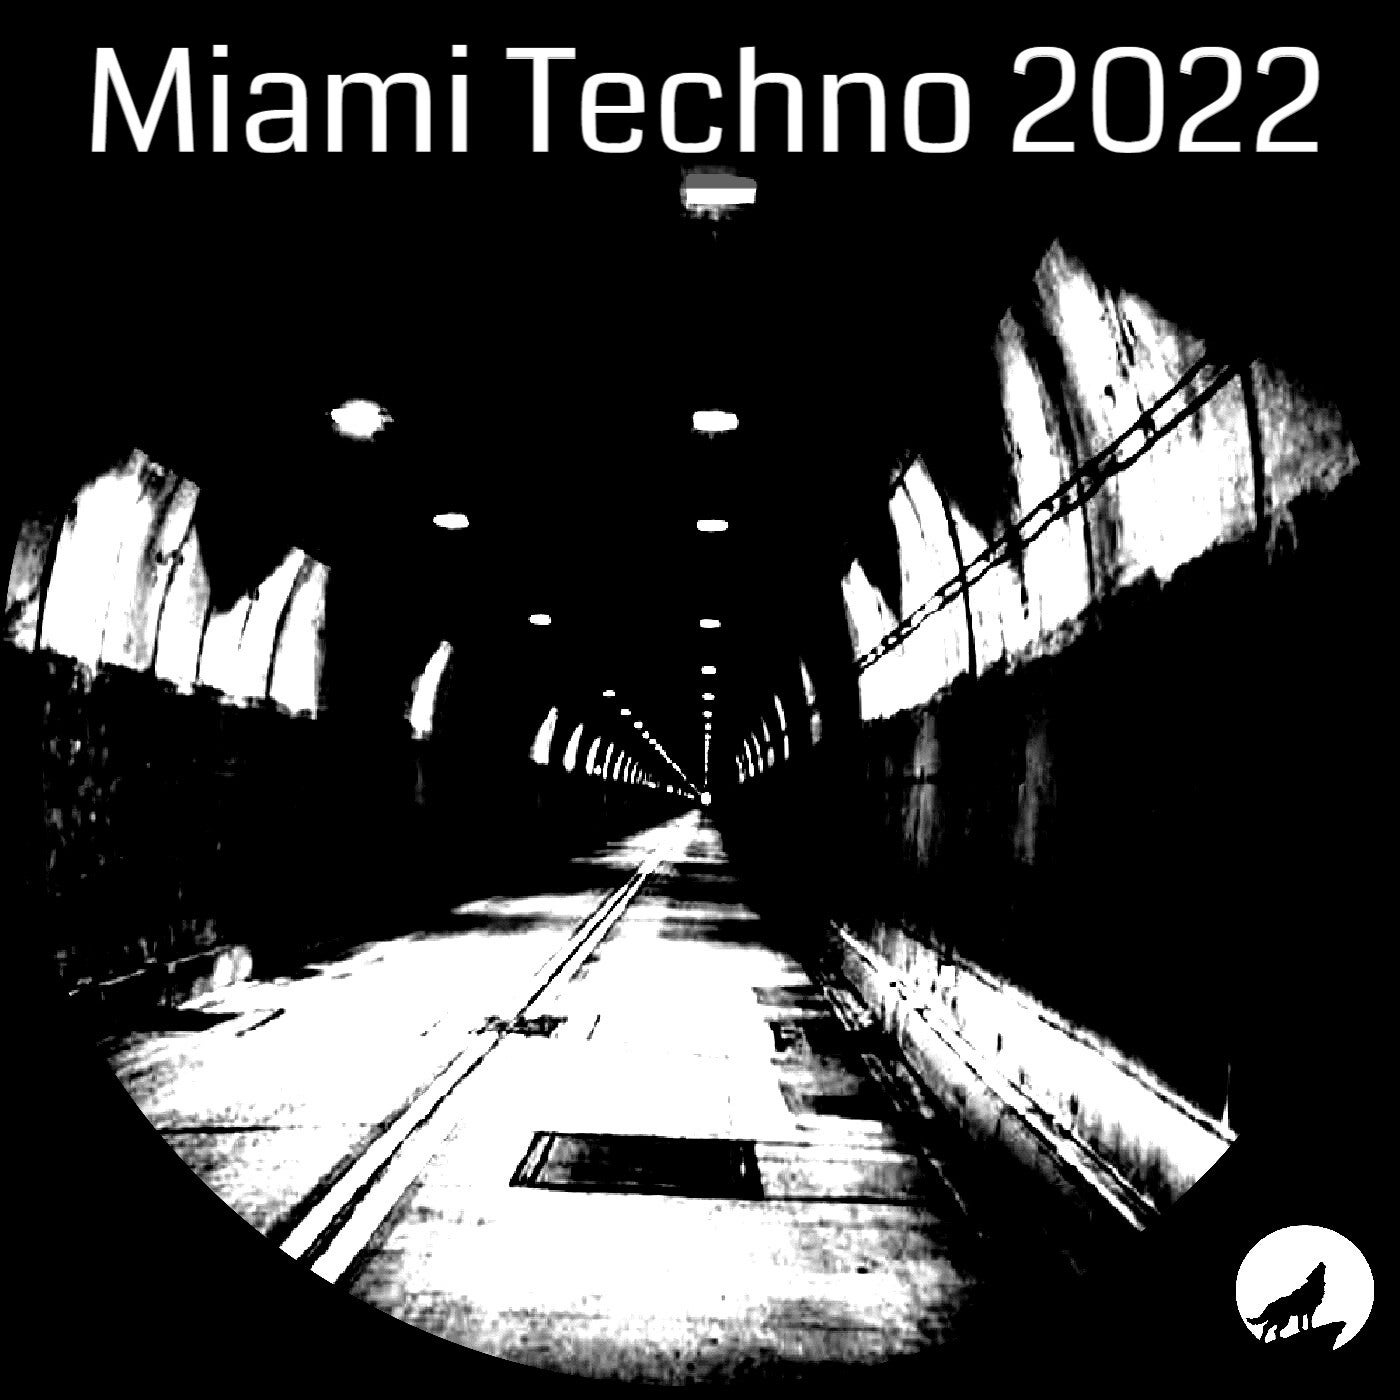 Miami Techno 2022